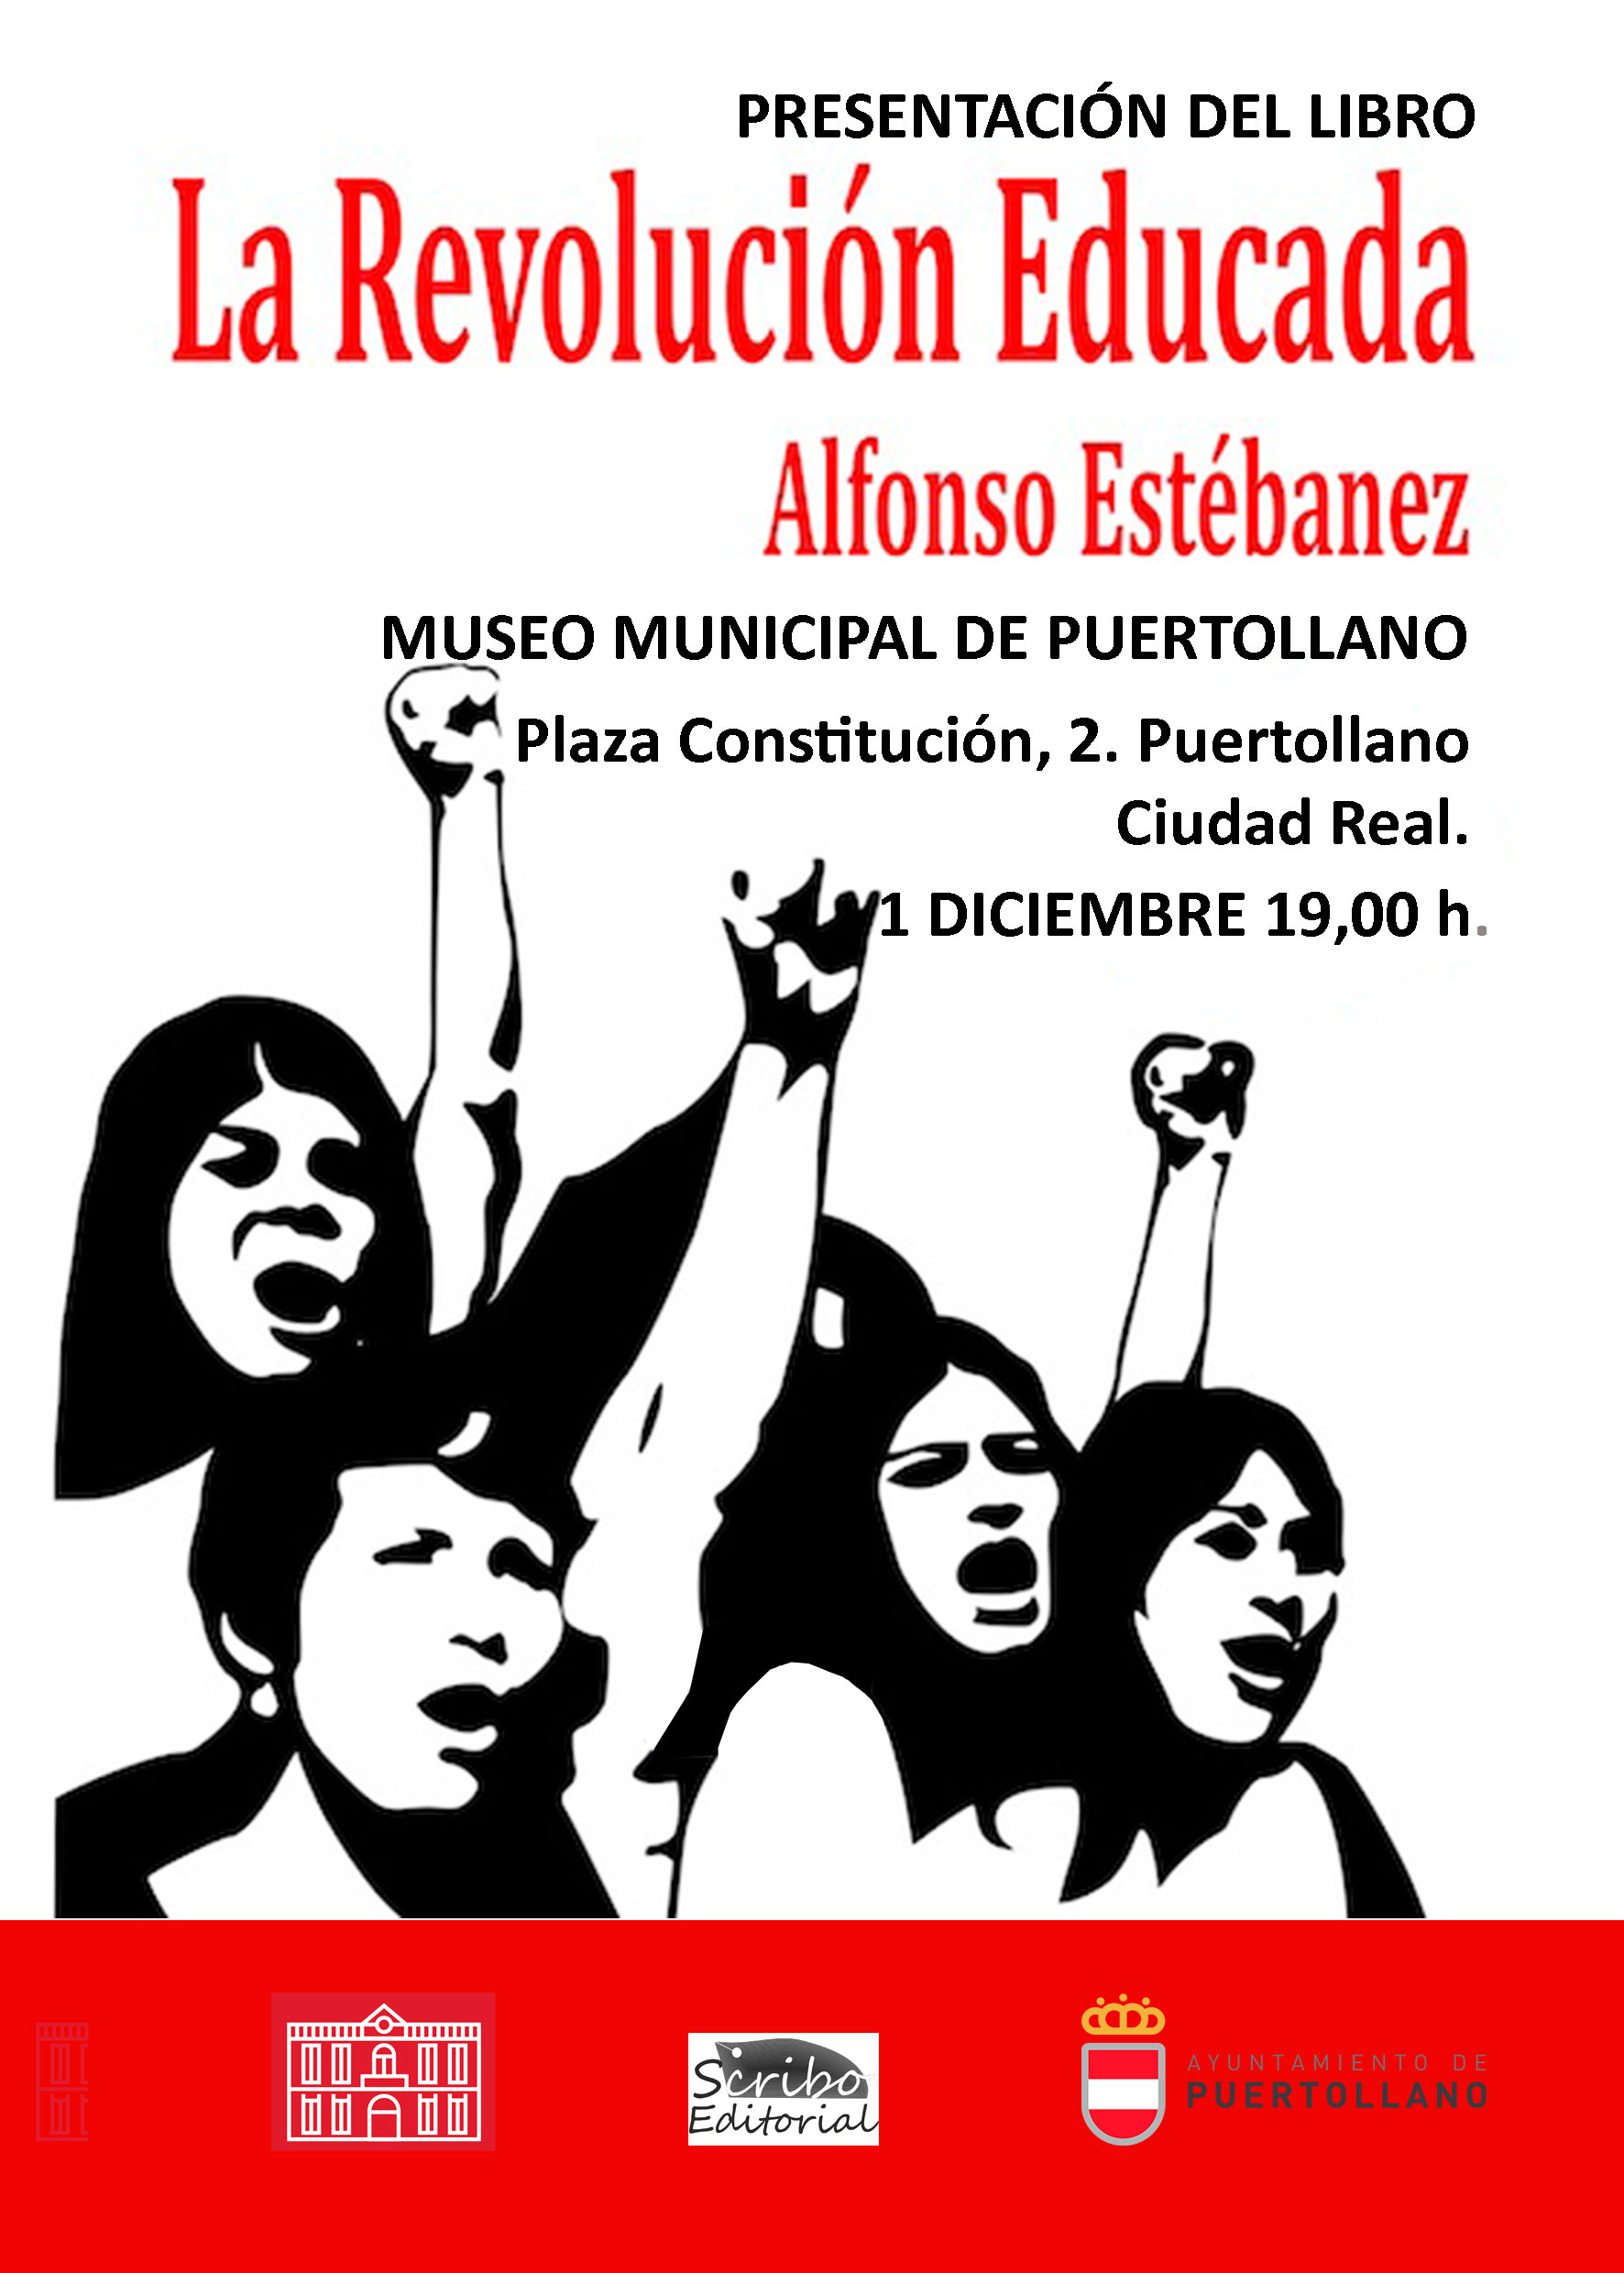 Cartel de la presentación del libro "La Revolución Educada"